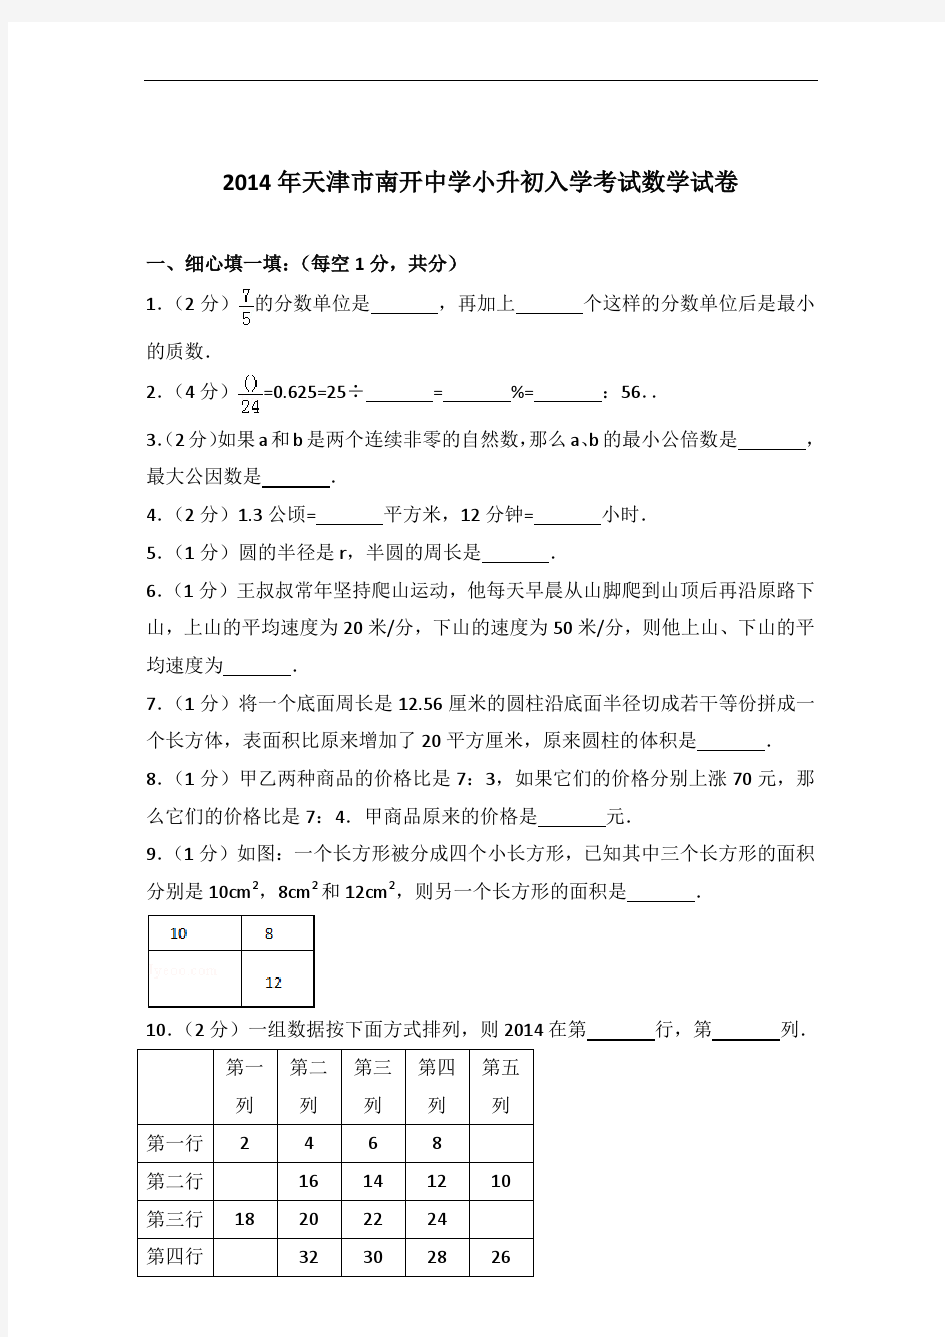 【真卷】2014年天津市南开中学小升初入学考试数学试卷及答案